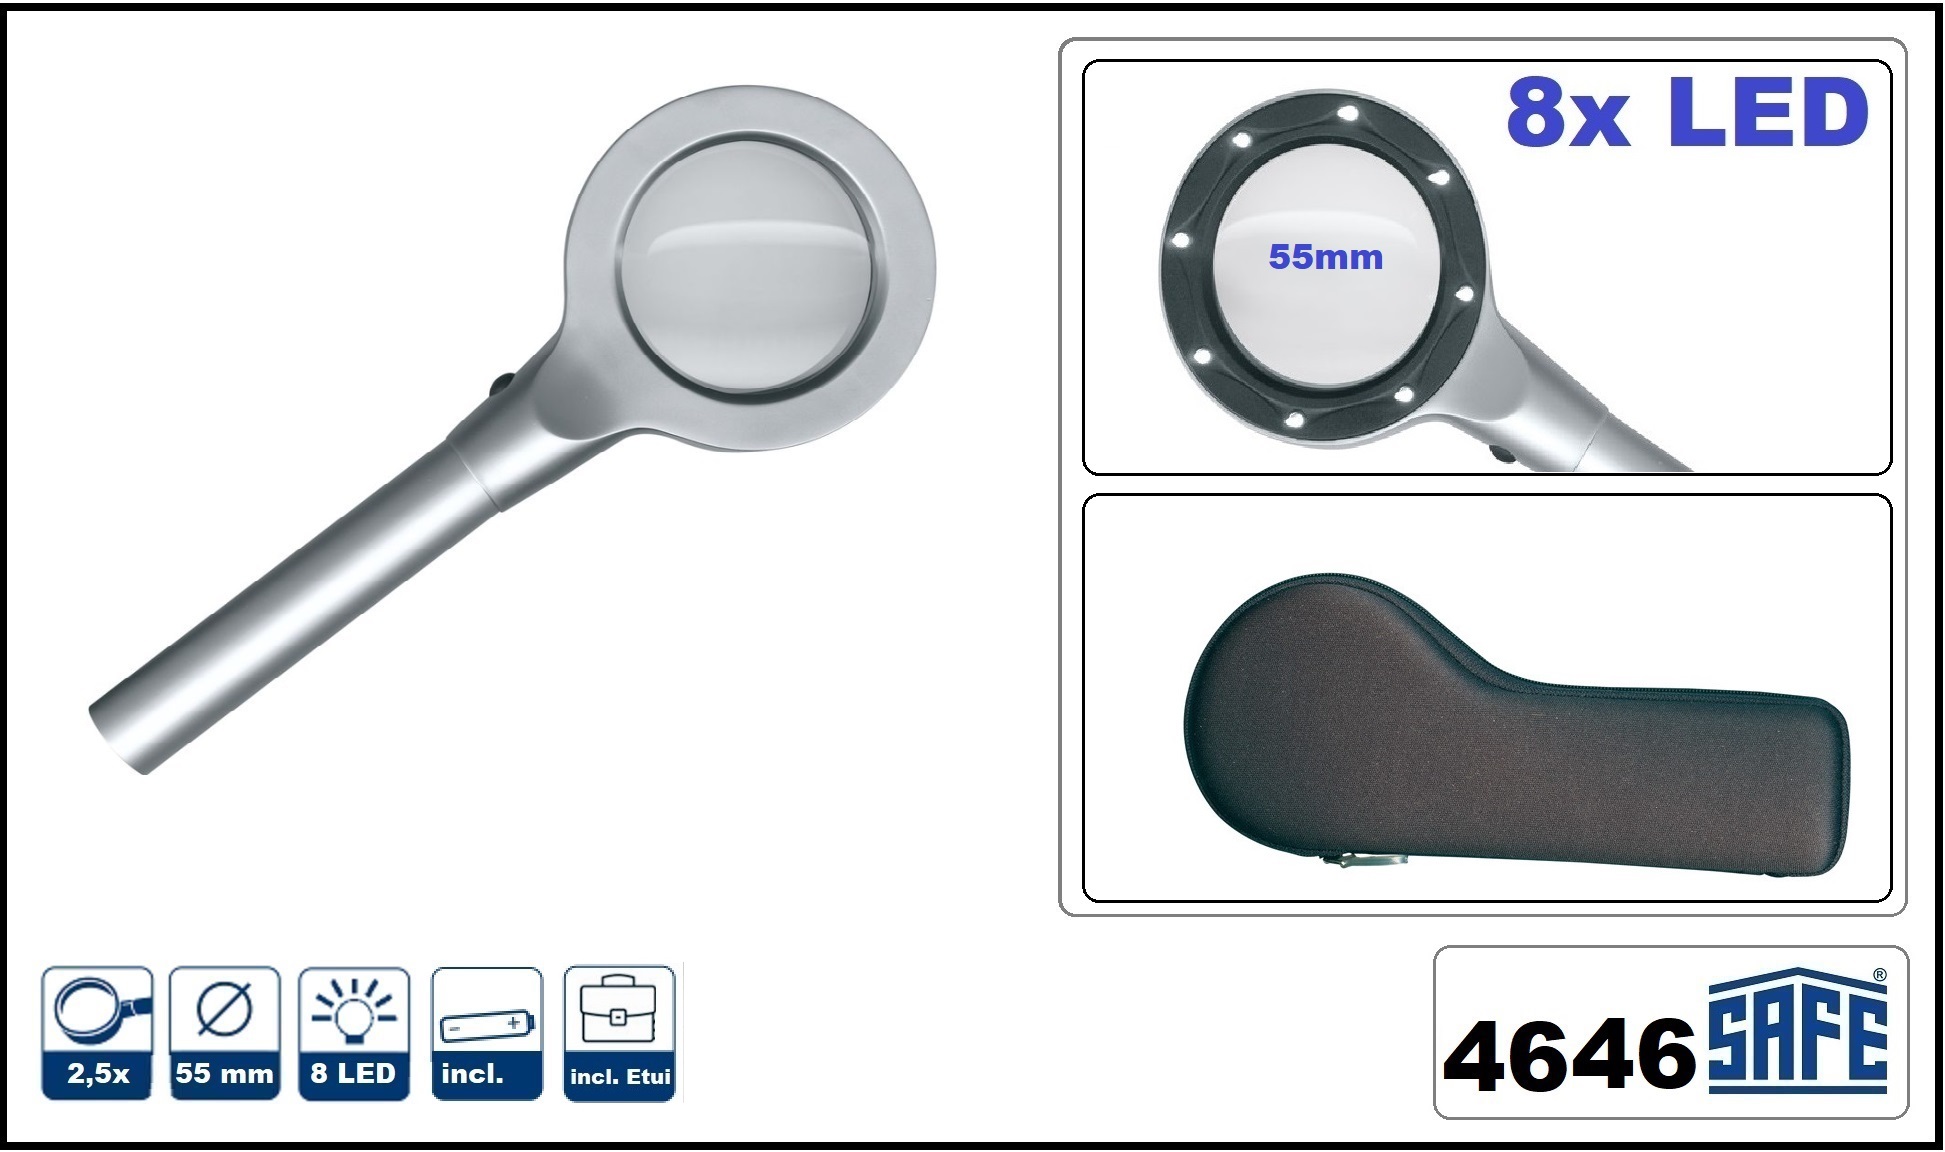 SAFE 4646 Silber Design Leuchtlupe Stiellupe Lupe mit 8 LED 2, 5x fache Vergrößerung + Etui + Batterien